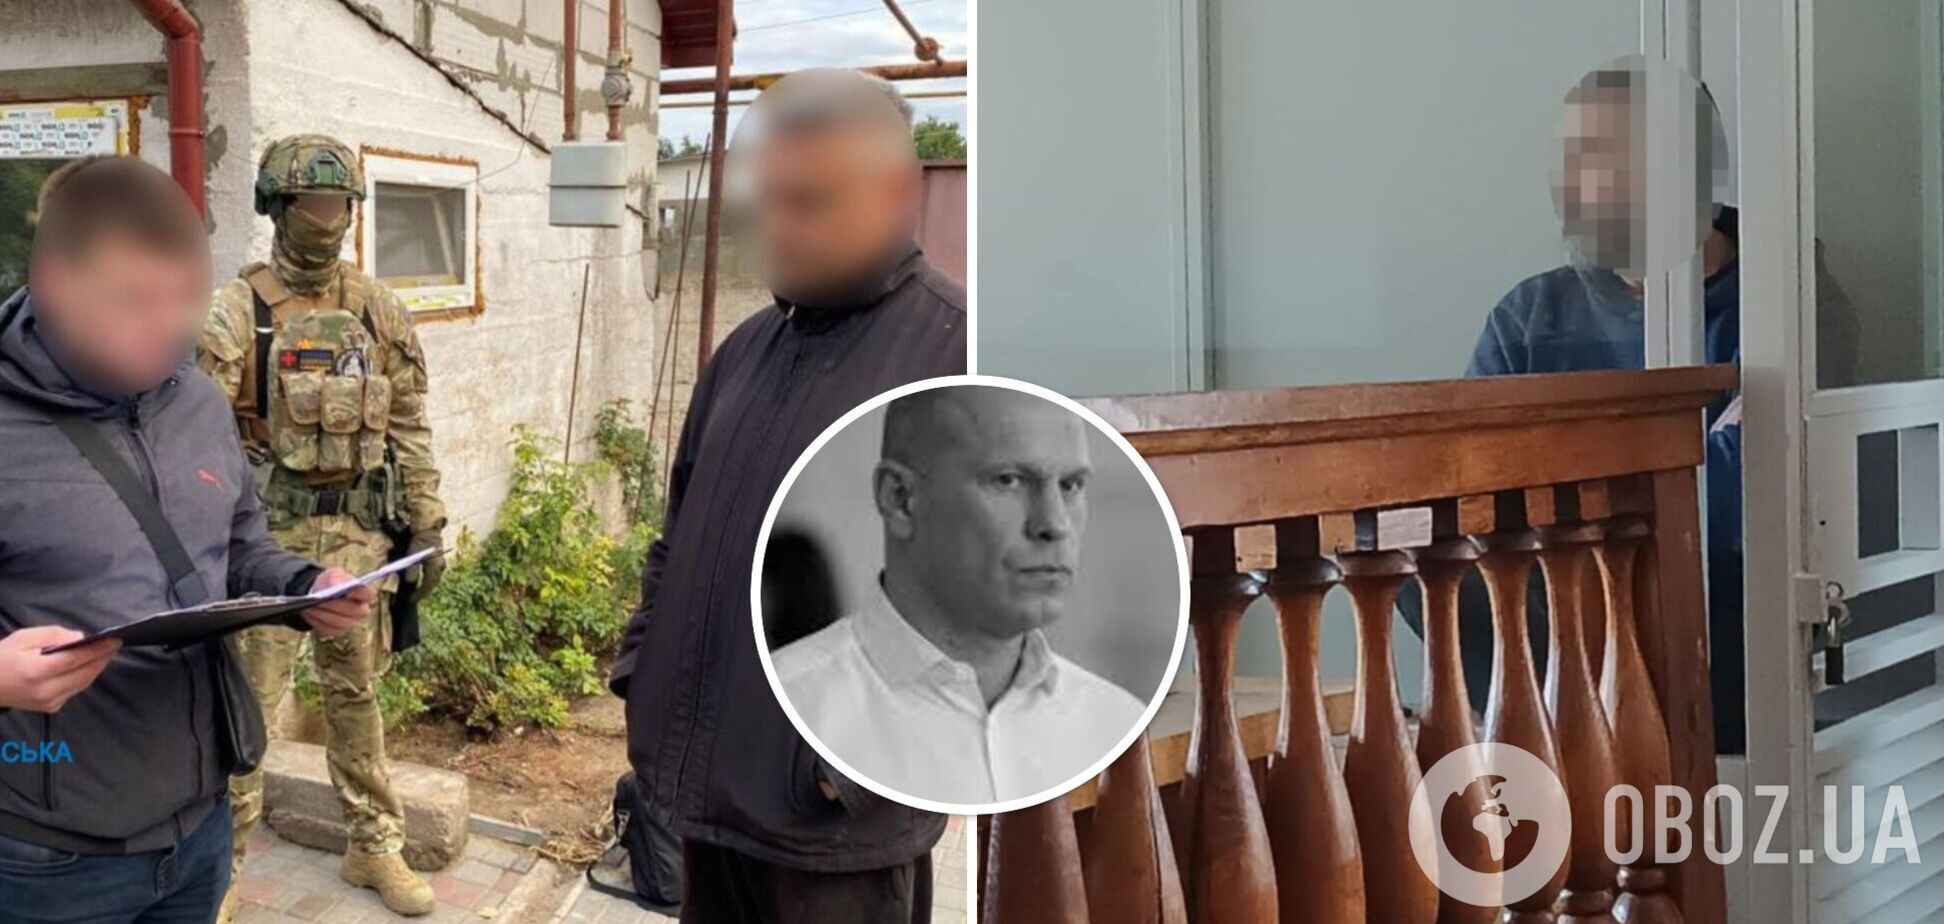 Соратнику Кивы, шпионившему по комплексам ПВО на Днепропетровщине, дали 15 лет тюрьмы